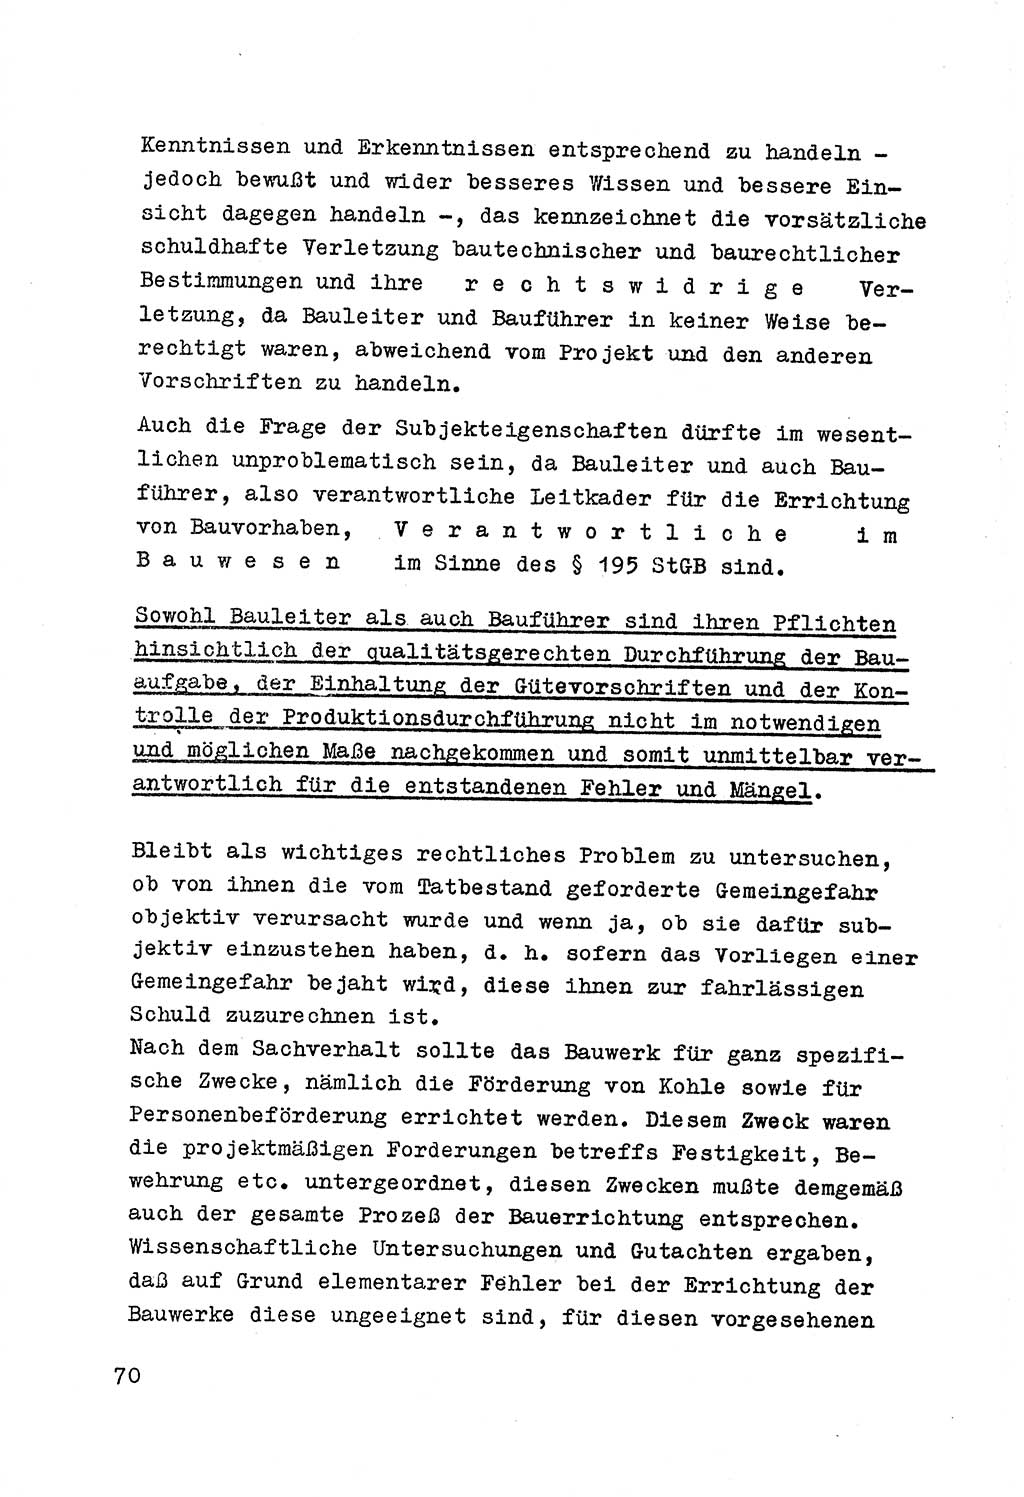 Strafrecht der DDR (Deutsche Demokratische Republik), Besonderer Teil, Lehrmaterial, Heft 7 1970, Seite 70 (Strafr. DDR BT Lehrmat. H. 7 1970, S. 70)